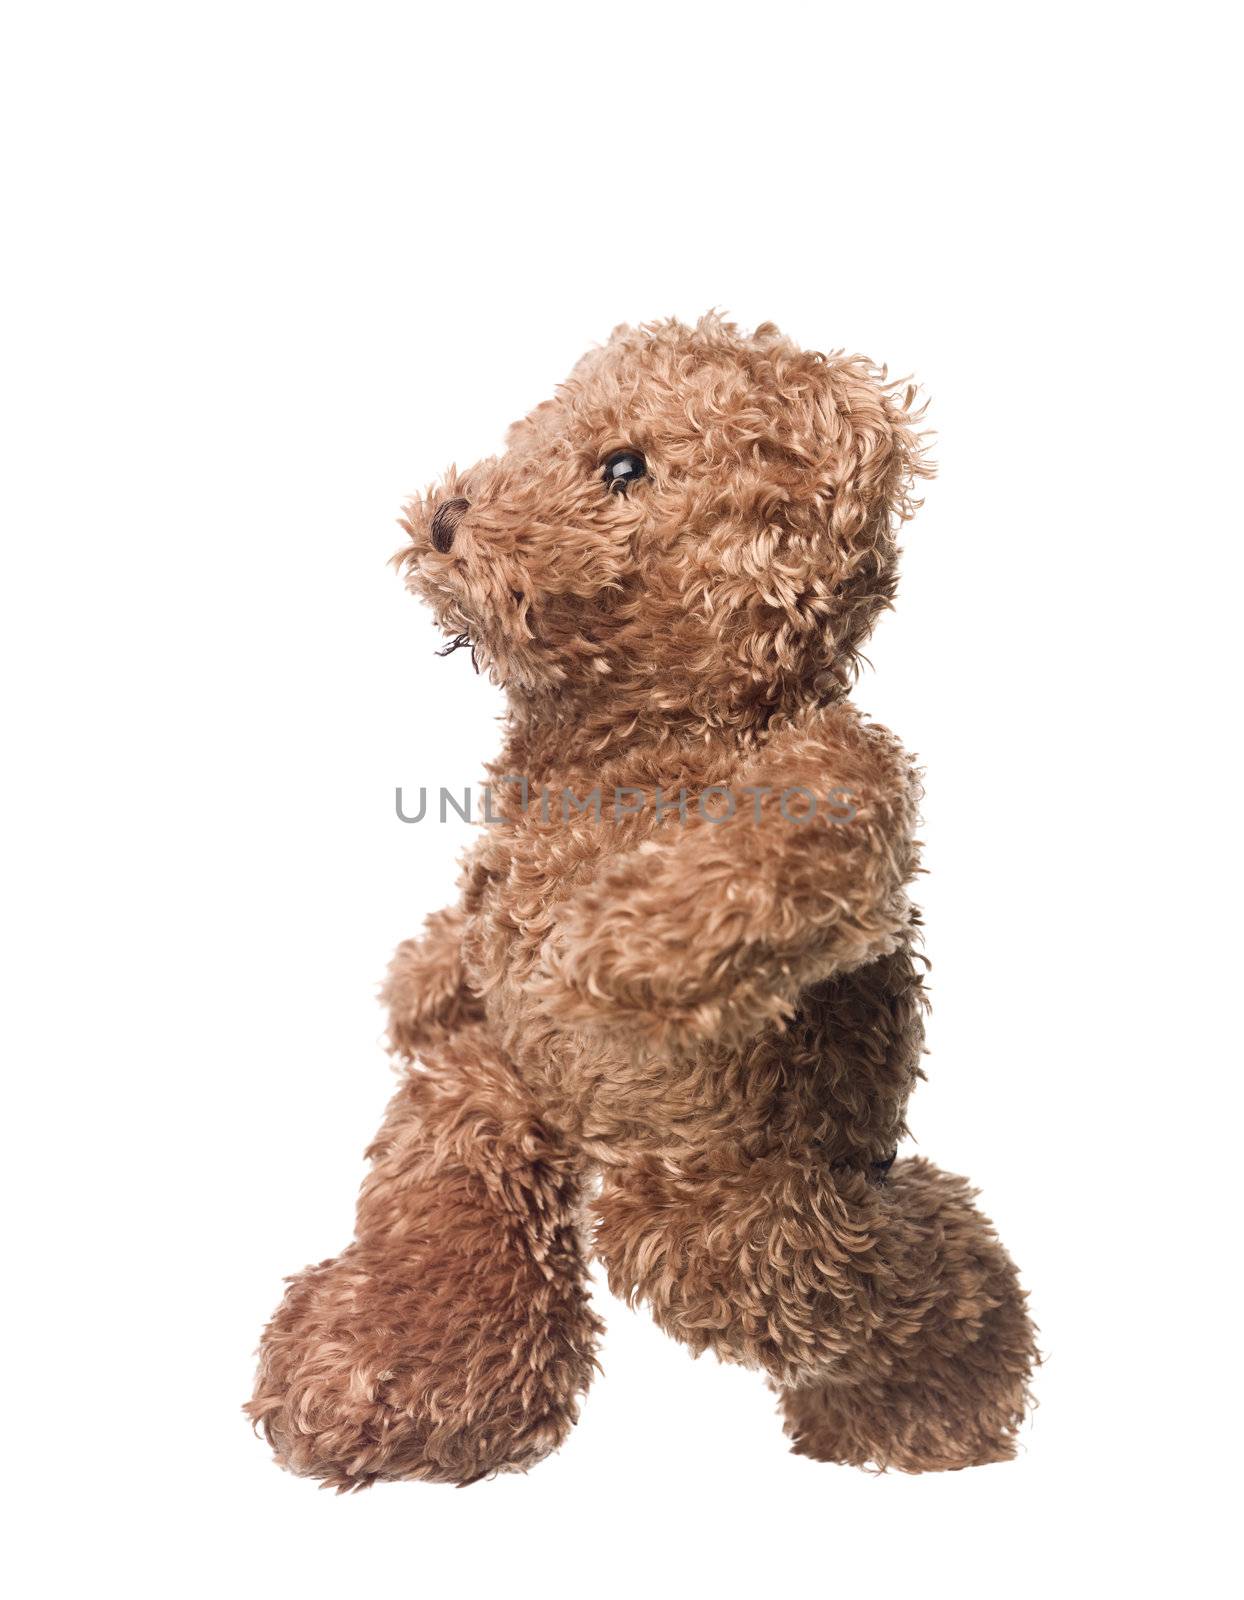 Teddy bear by gemenacom